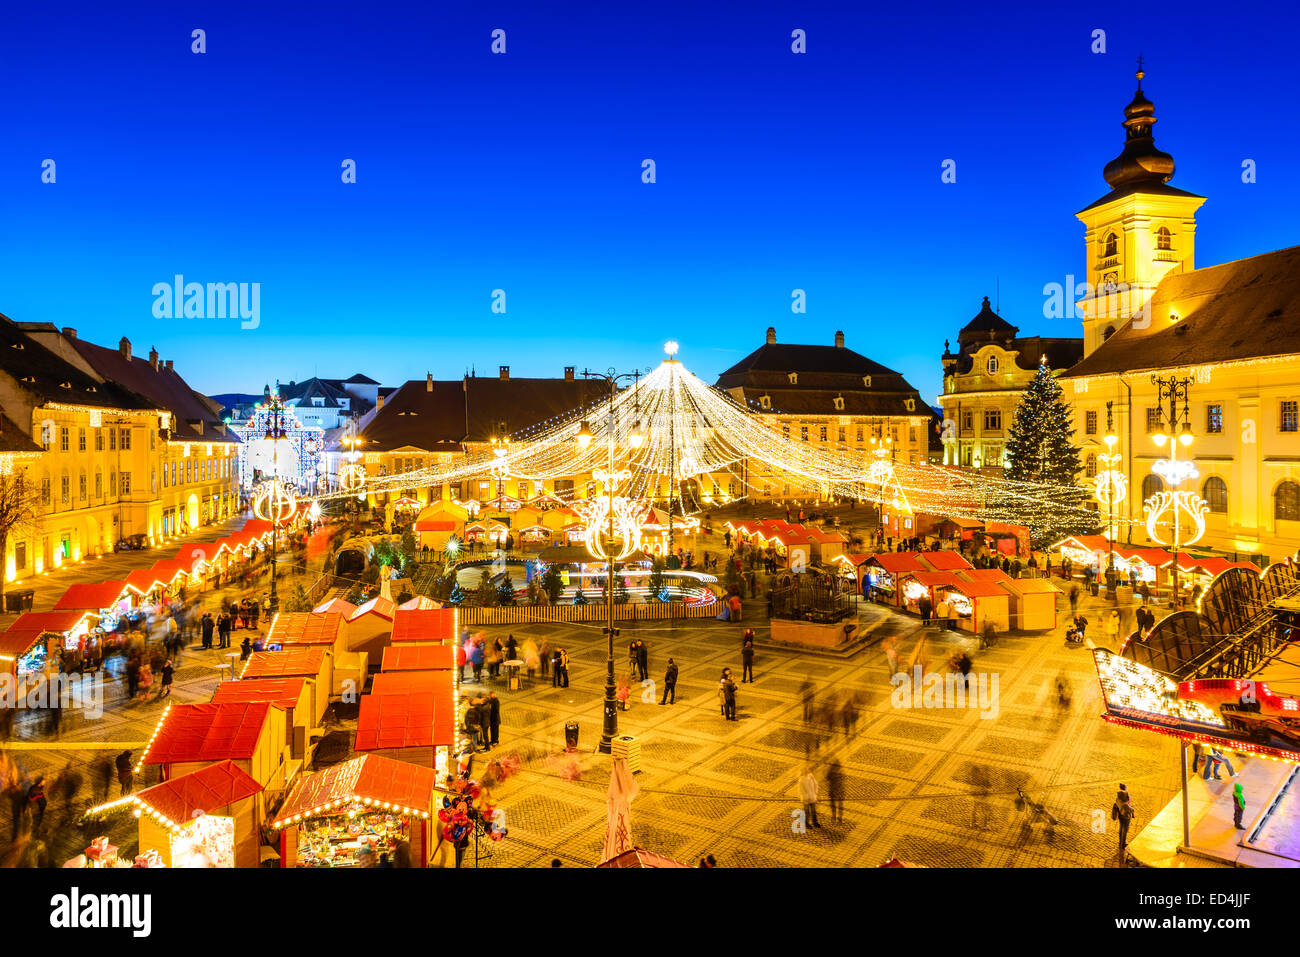 SIBIU, Rumänien - 20. Dezember 2014: Nacht-Bild mit Touristen am Weihnachtsmarkt im großen Markt der mittelalterlichen Stadt Sibiu, Transylvania Stockfoto